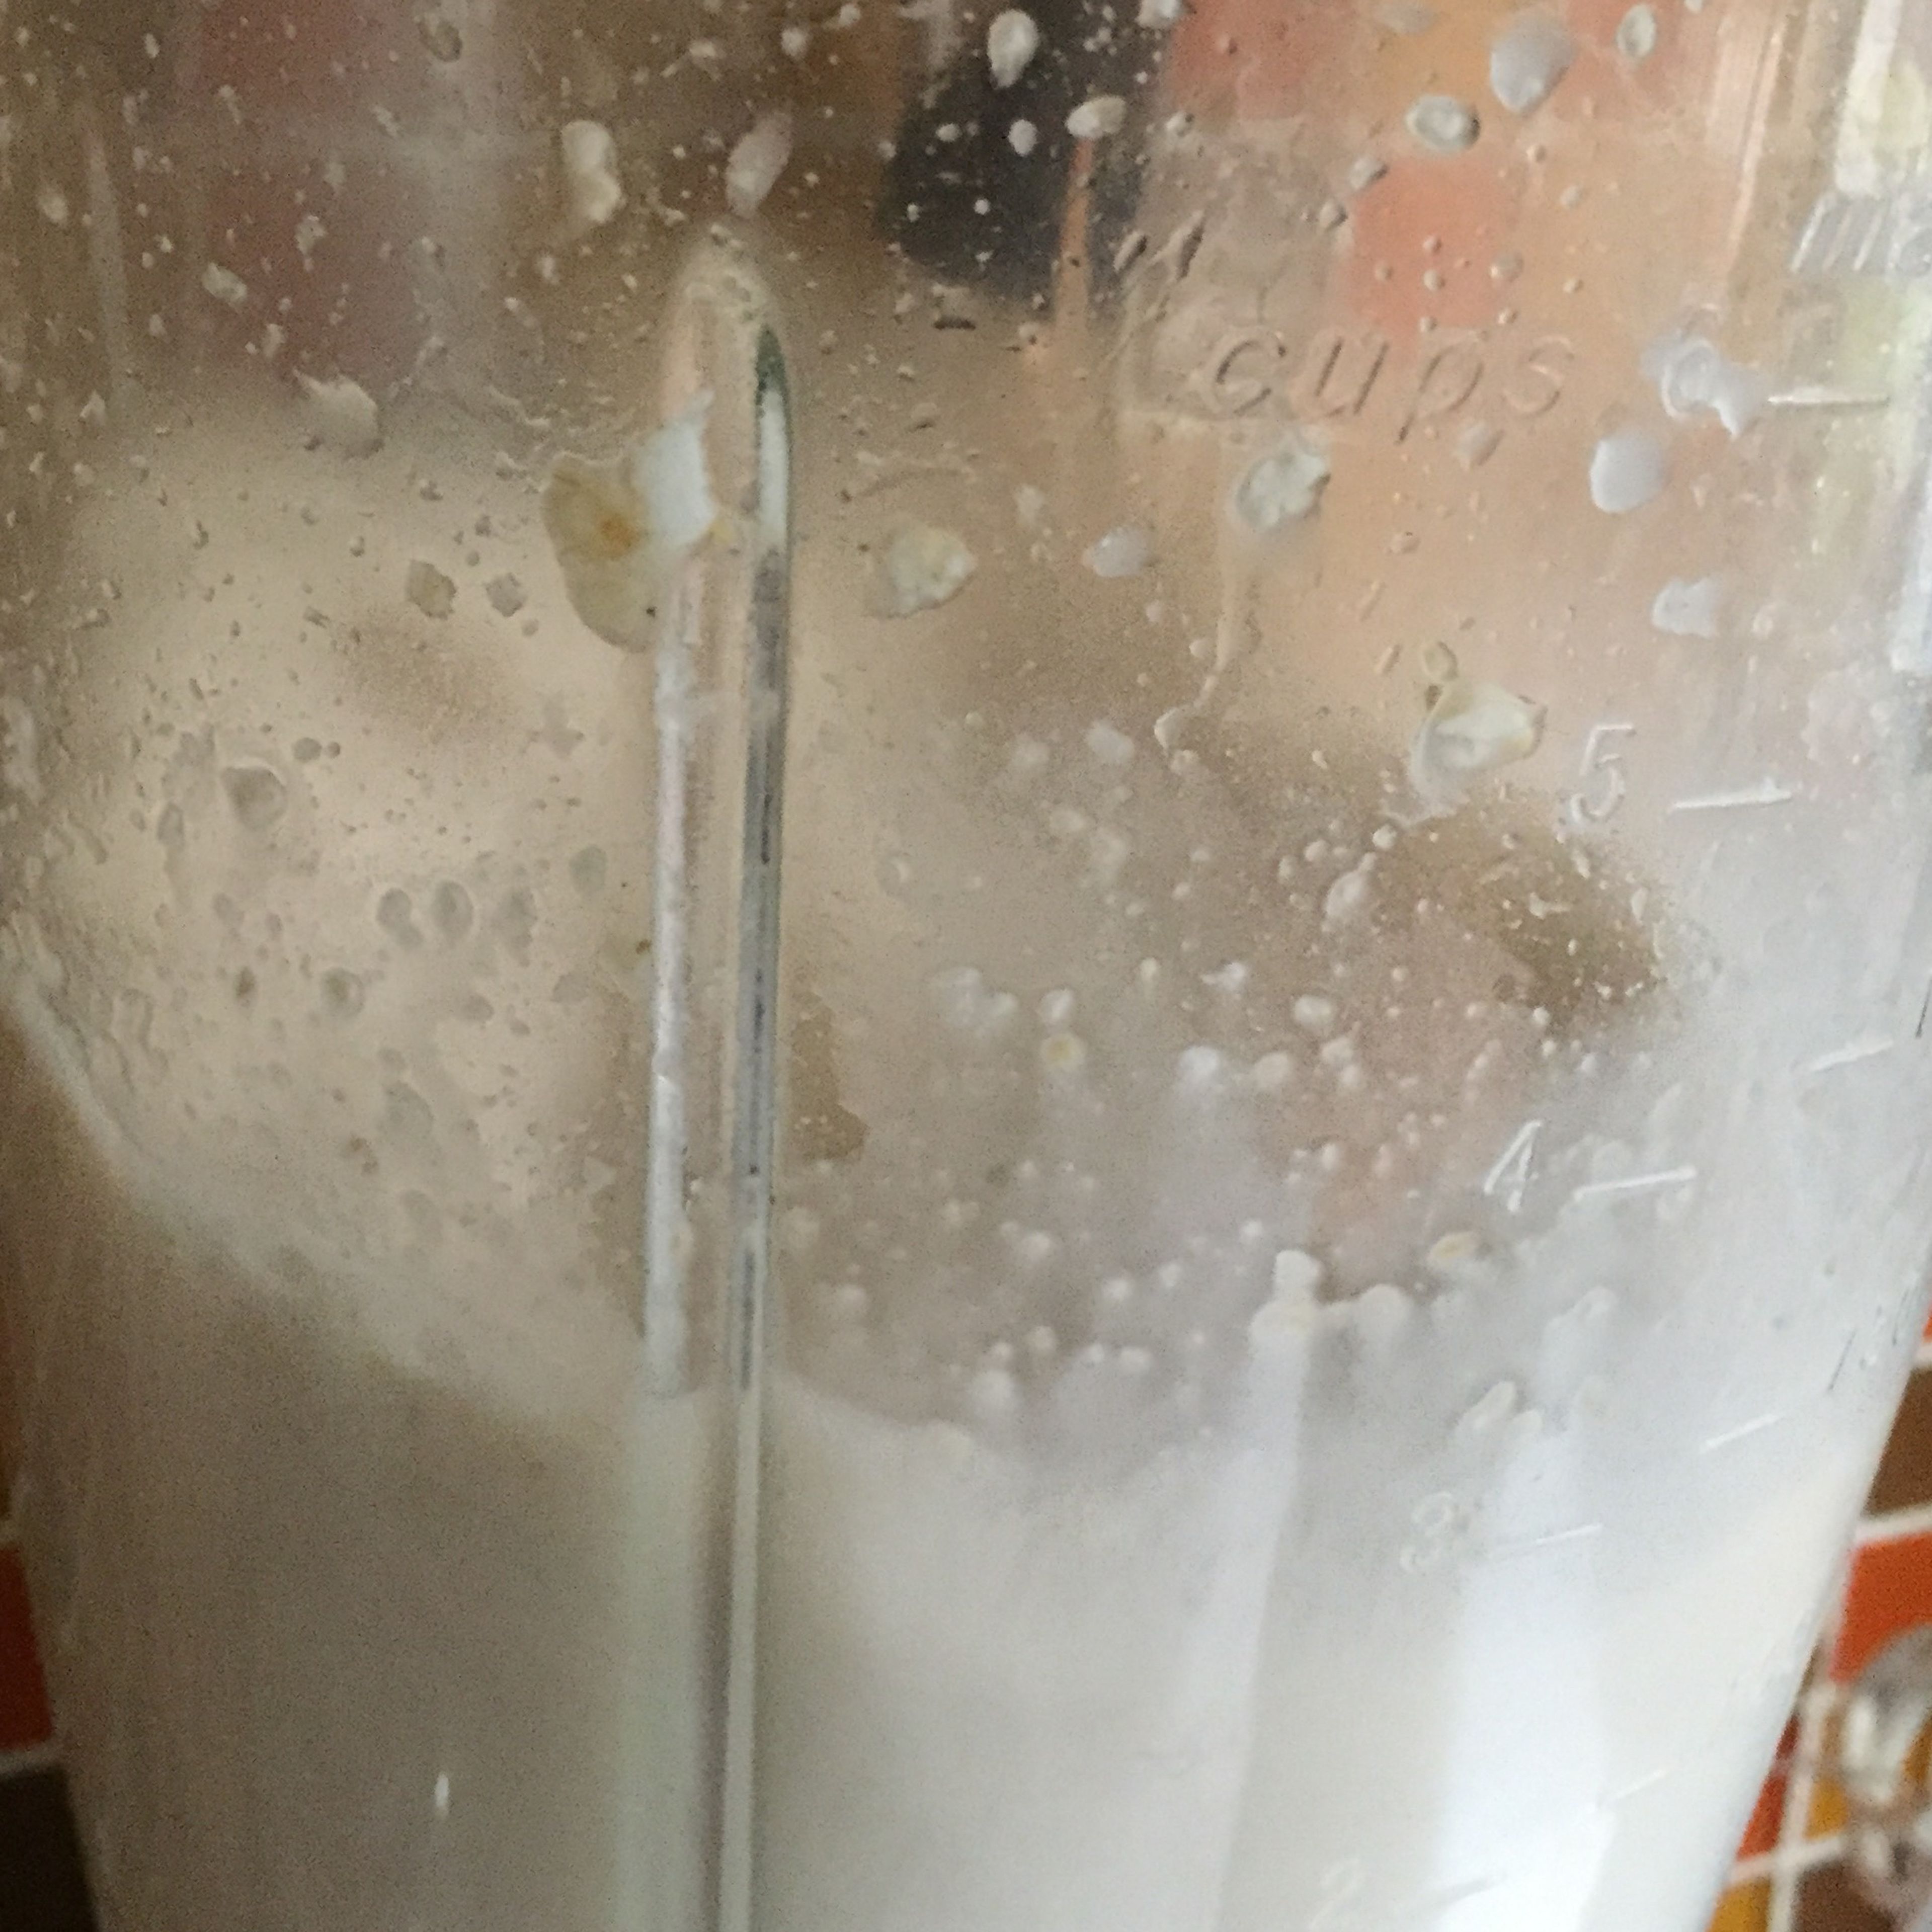 How make a oatmeal milk